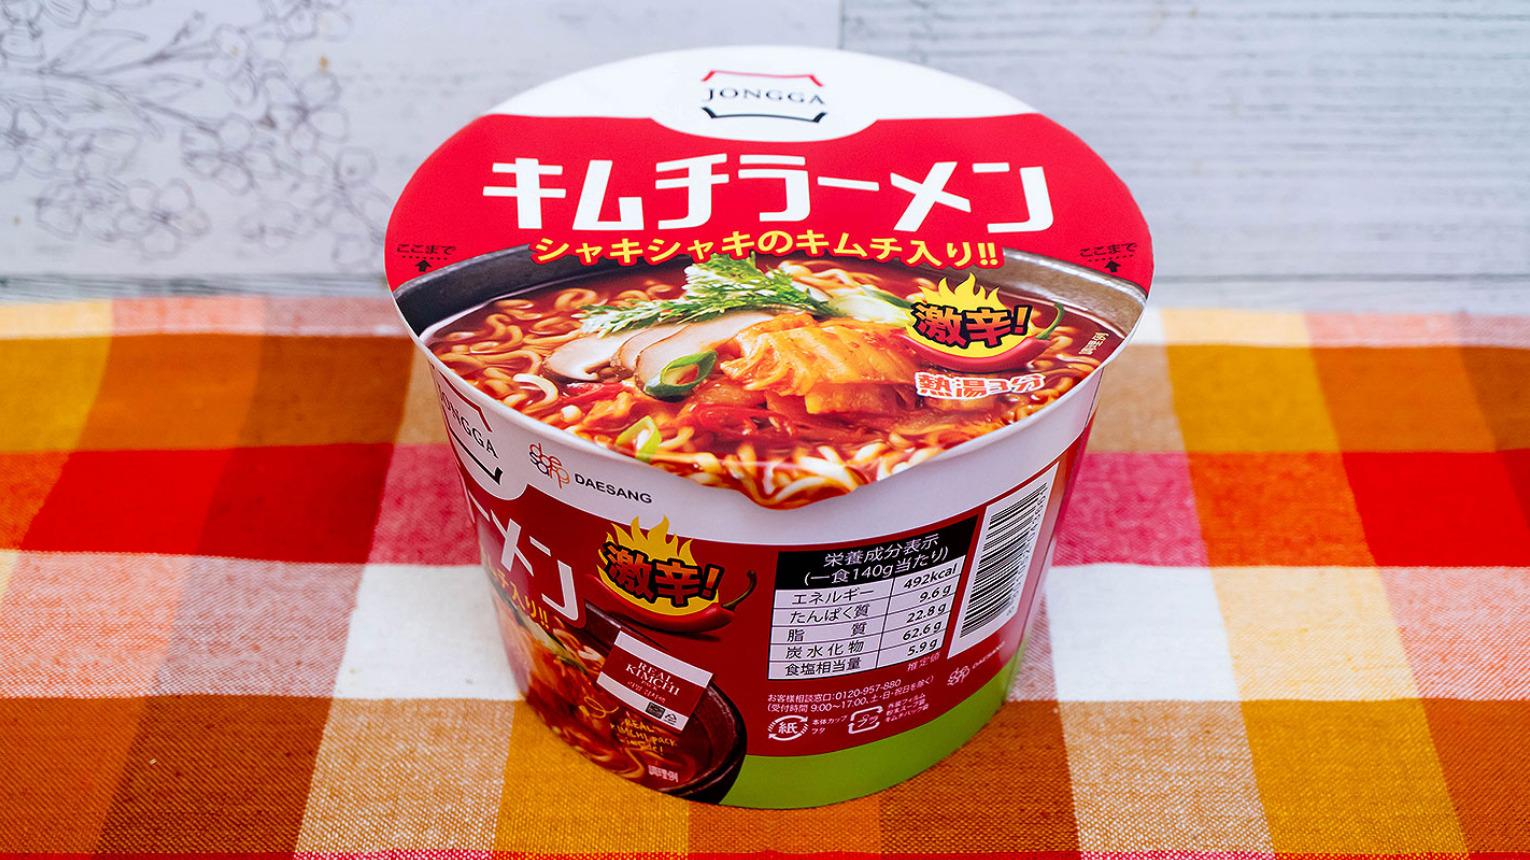 韓国ナンバーワン「キムチ」のカップ麺「宗家キムチラーメン」を食べてみた（オサーン） - エキスパート - Yahoo!ニュース